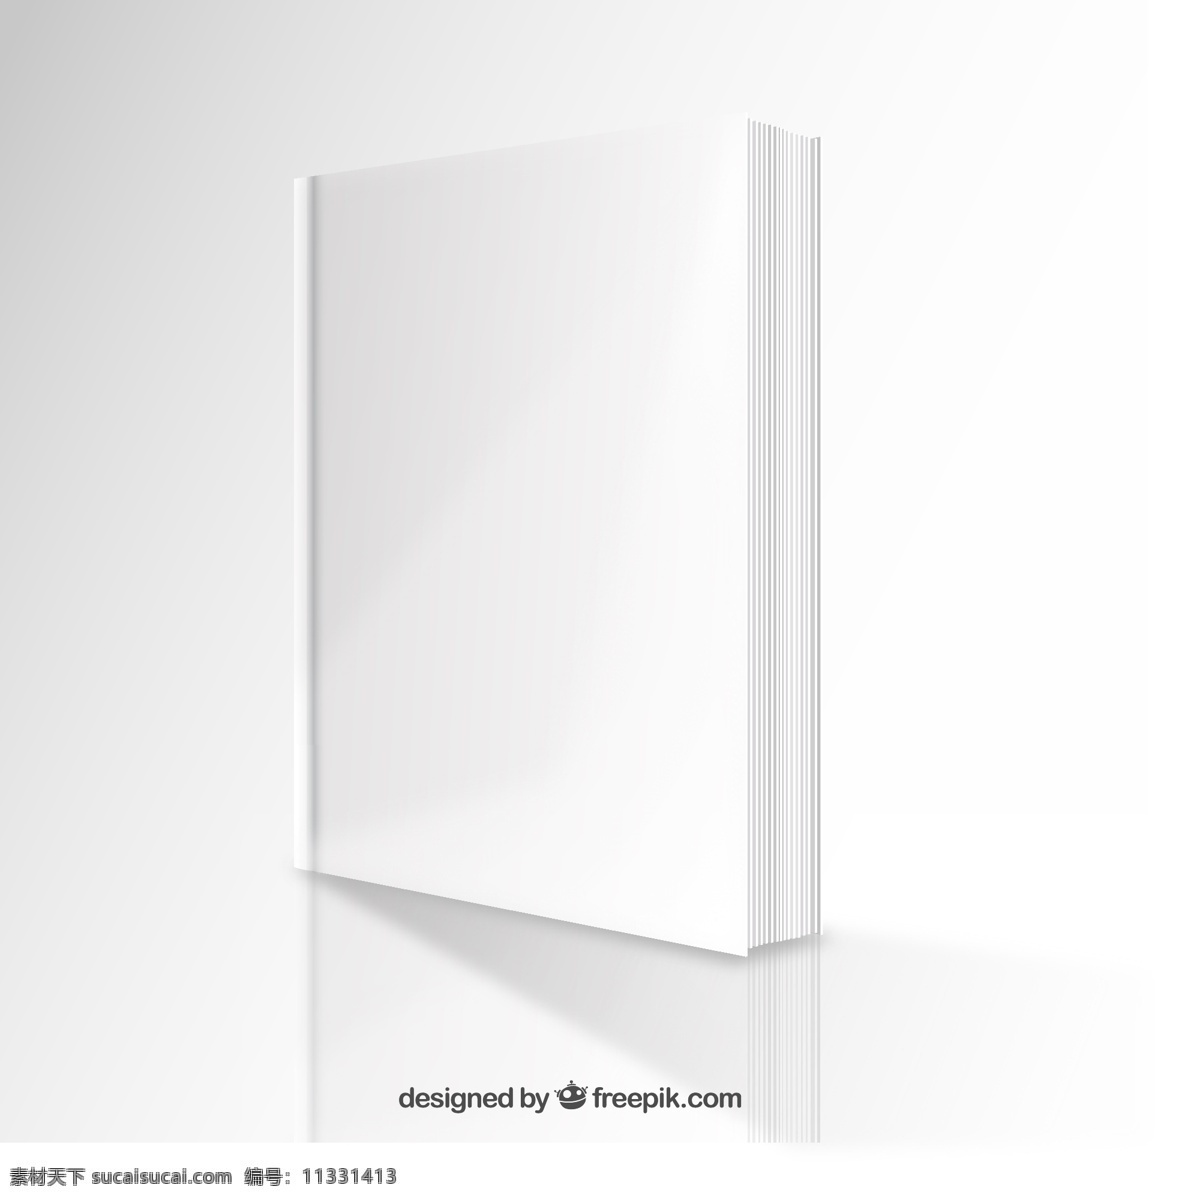 空白 书 模型 视角 本书设计 模板 封面 书籍封面 封面设计 透视 垂直 白色